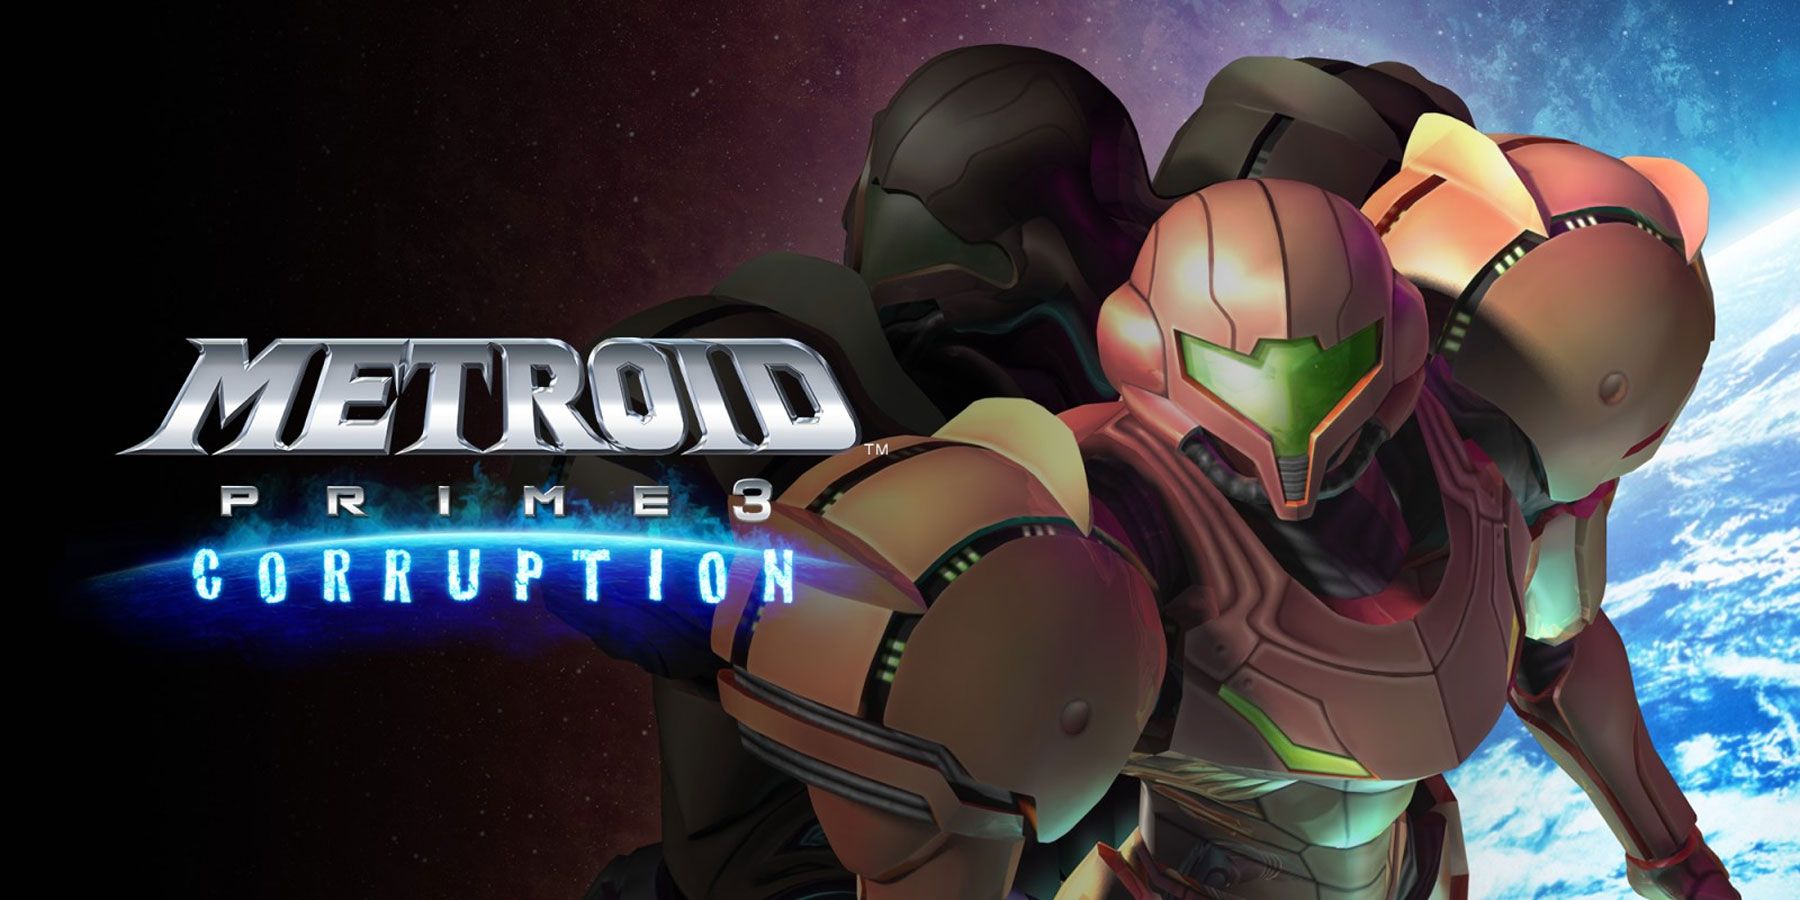 Metroid Prime 3 wurde ursprünglich als Open-World-Spiel geplant